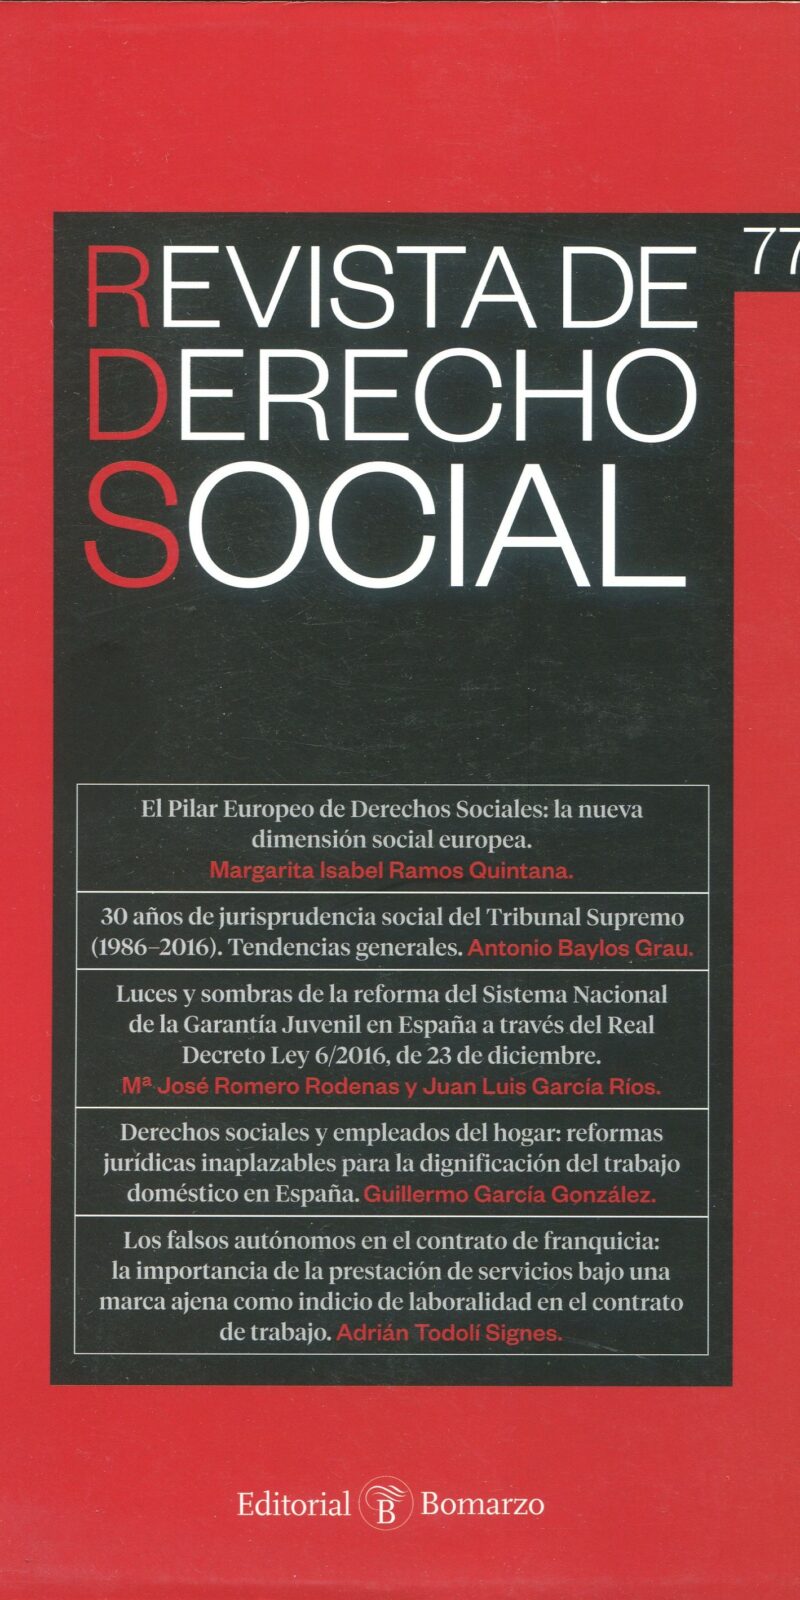 Revista de Derecho Social Nº 77. ENERO-MARZO 2017